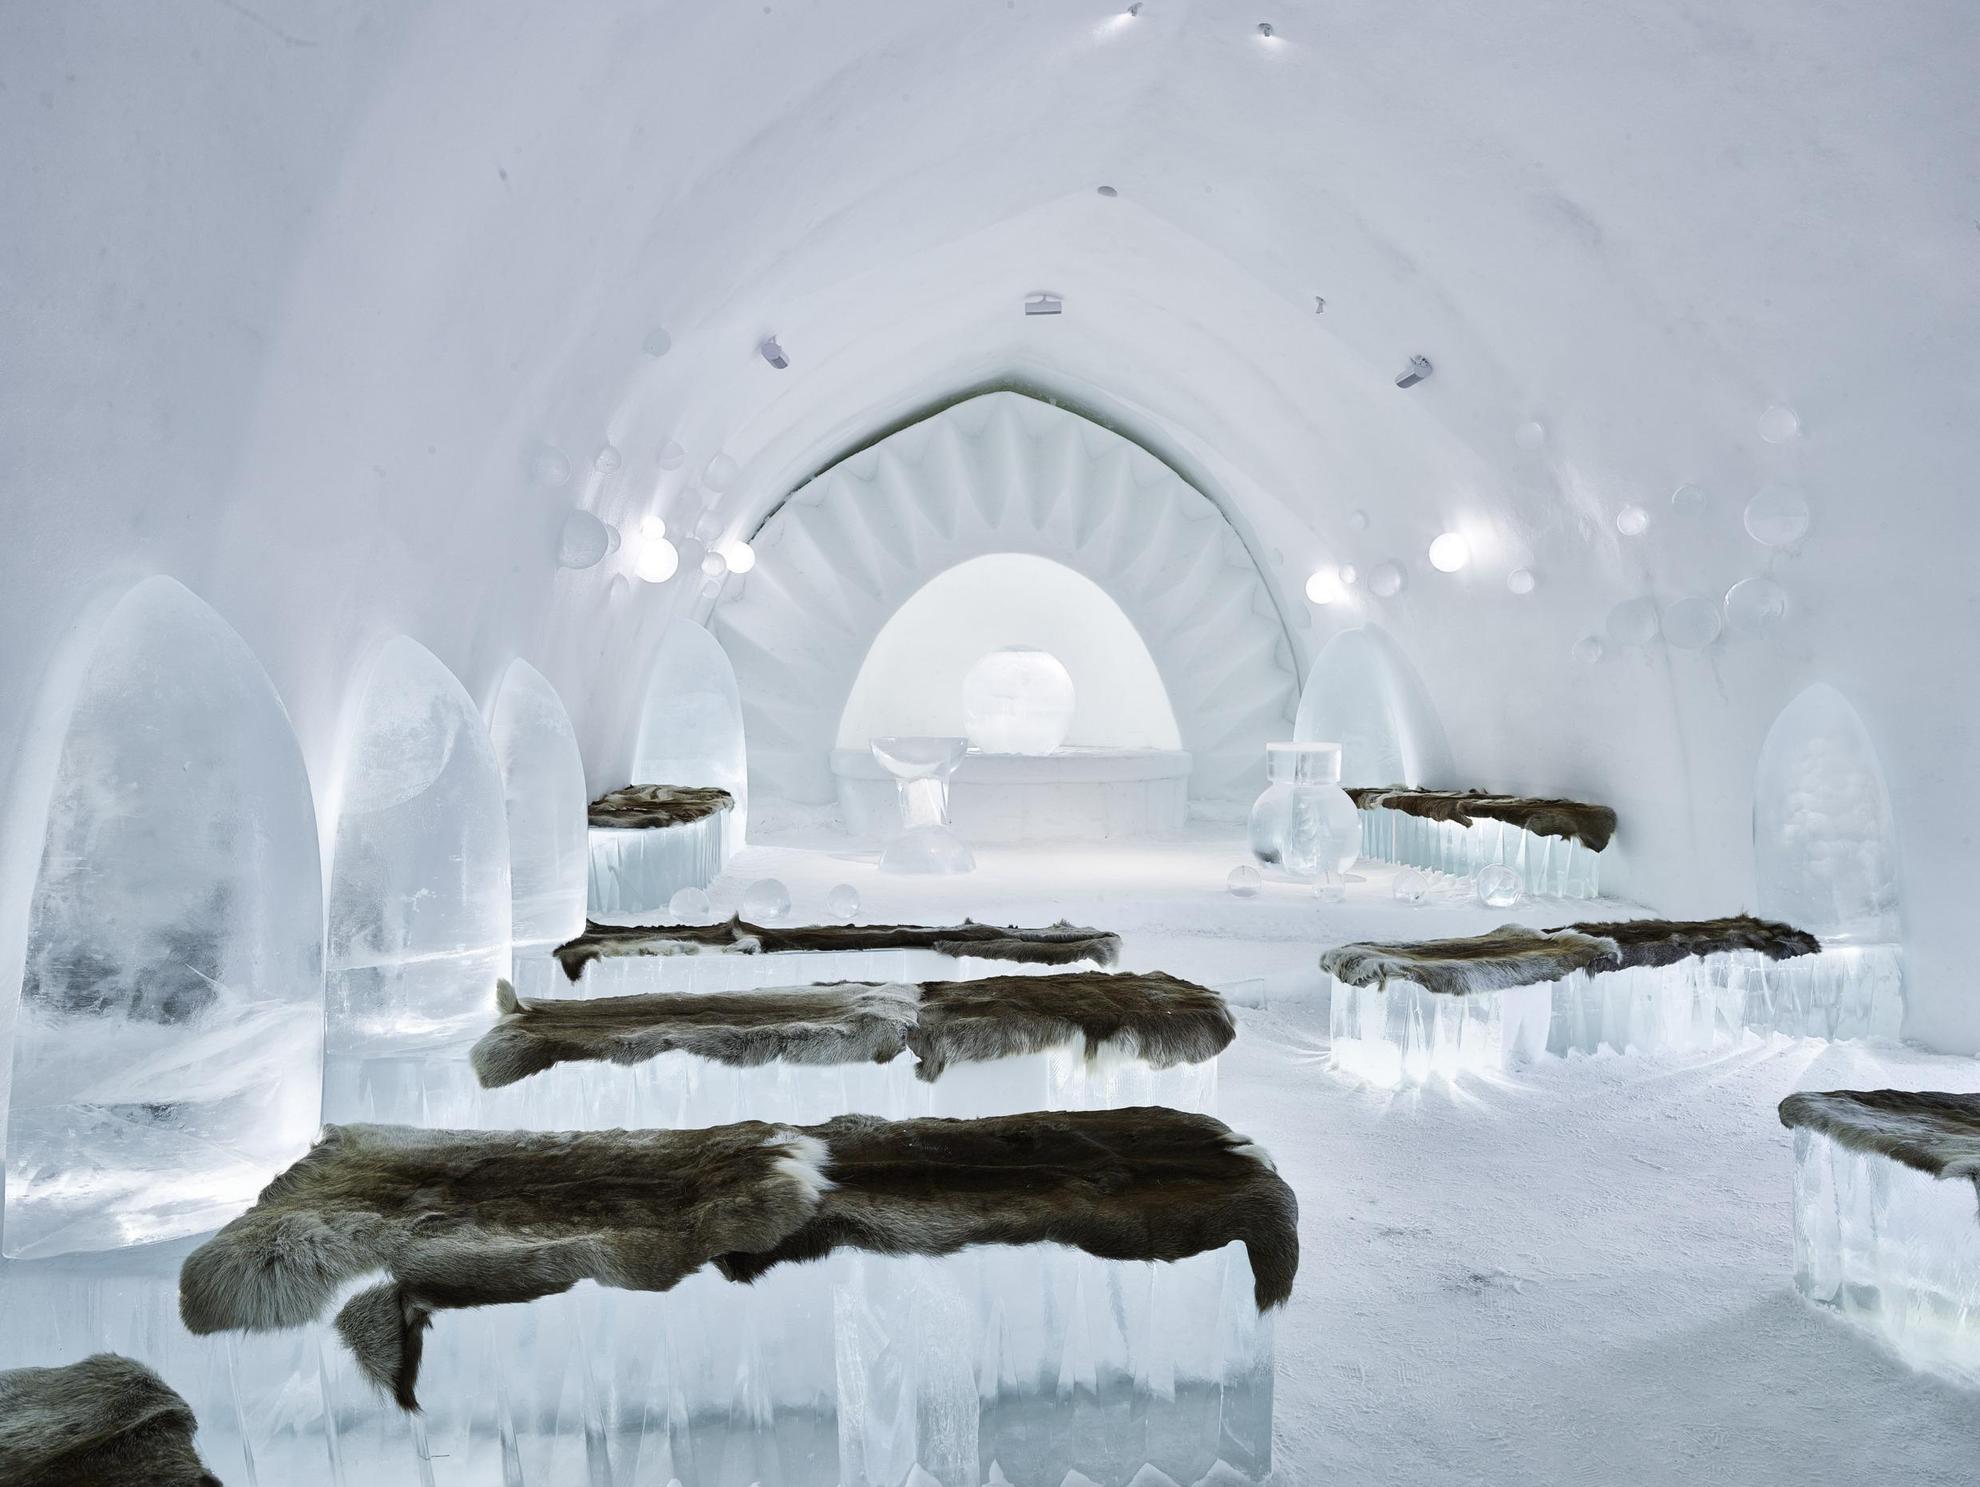 Une chapelle faite entièrement de glace avec des fourrures de rennes sur les bancs.